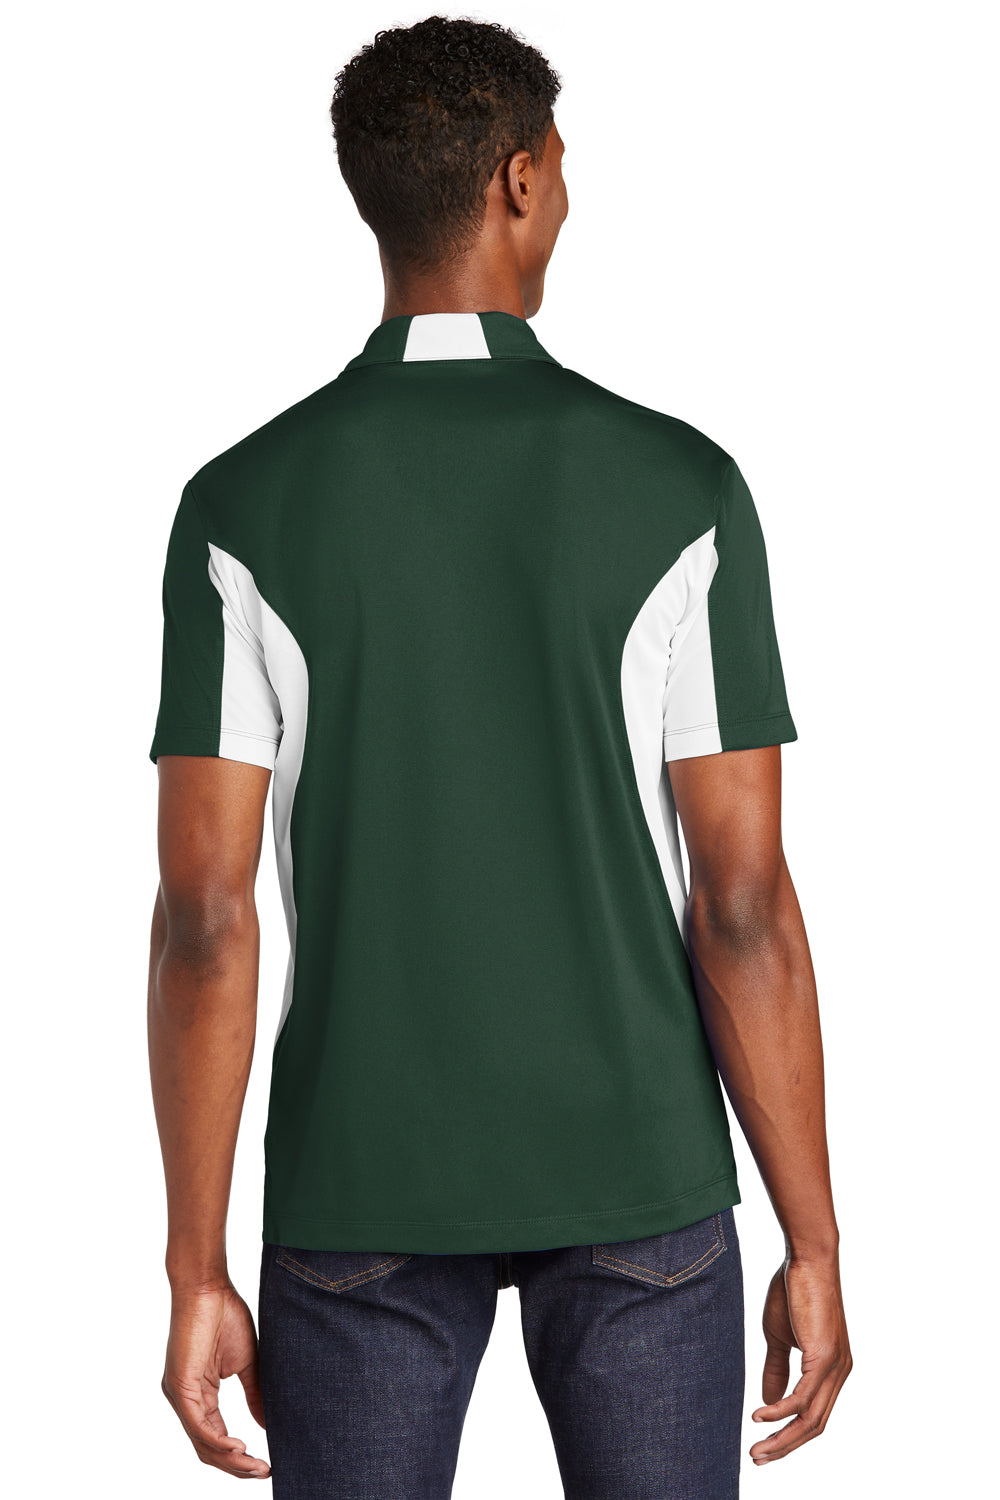 Sport-Tek ST655 Mens Sport-Wick Moisture Wicking Short Sleeve Polo Shirt Forest Green/White Back